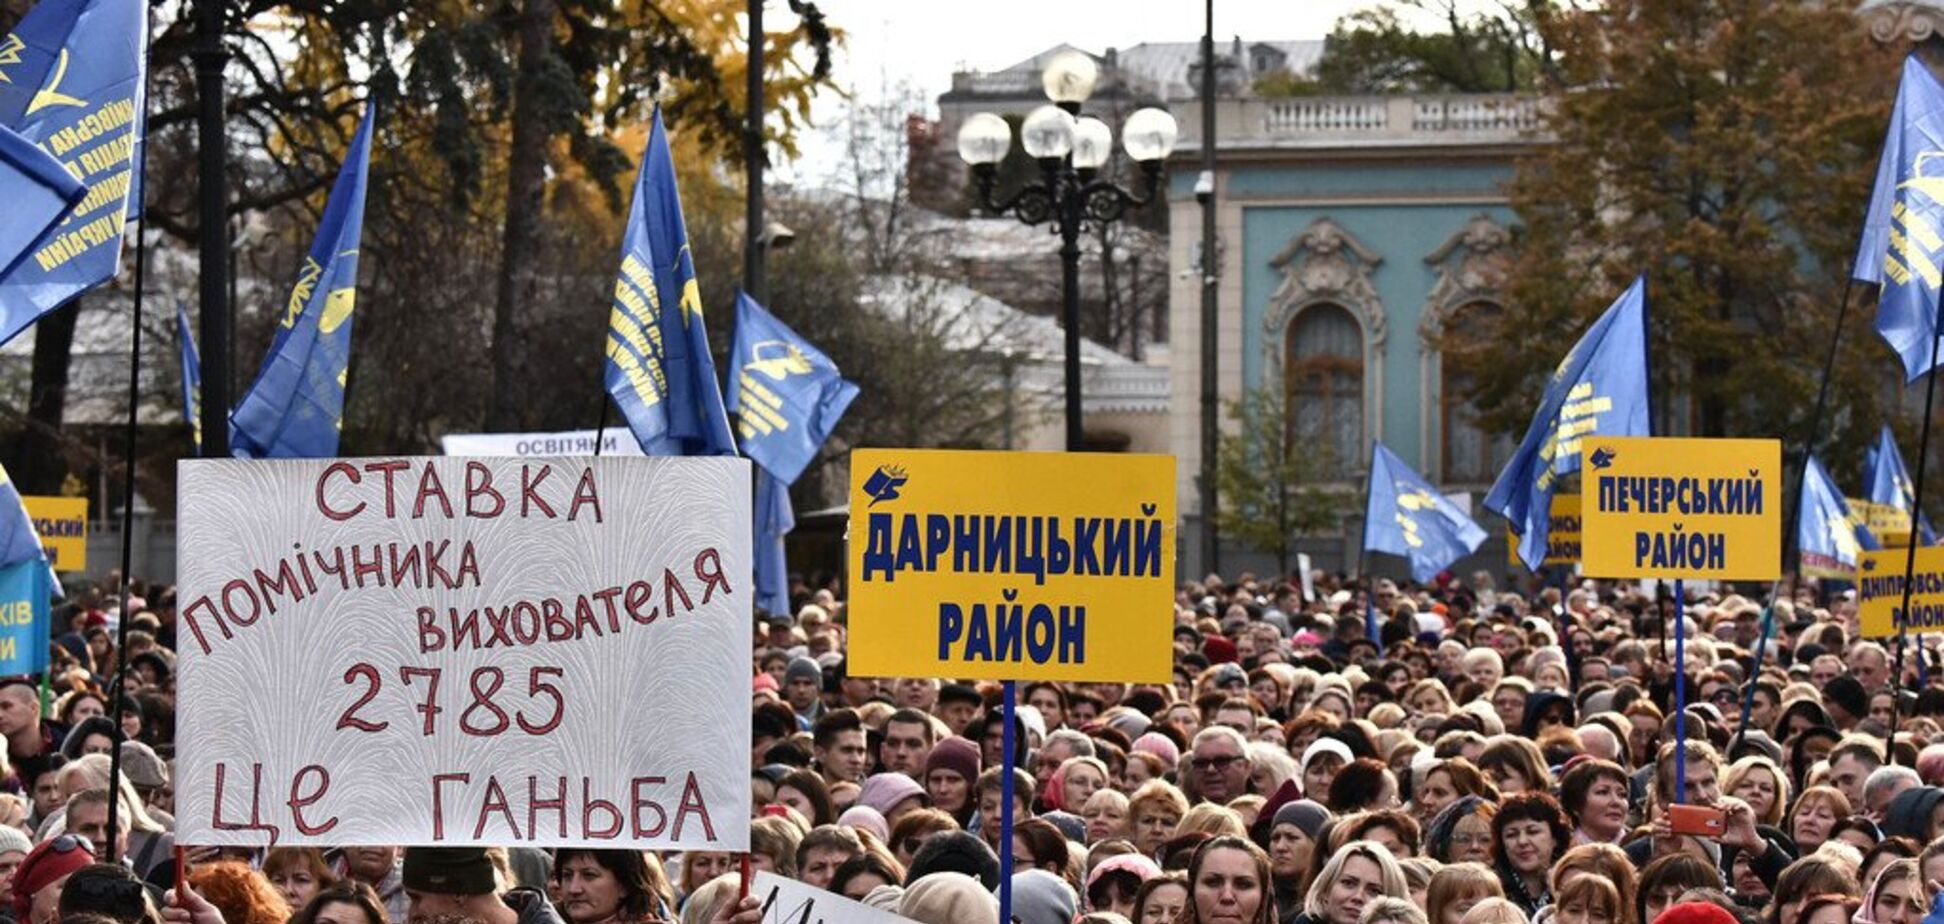 В Киеве тысячи педагогов вышли на митинг против 40-часовой рабочей недели. Фото